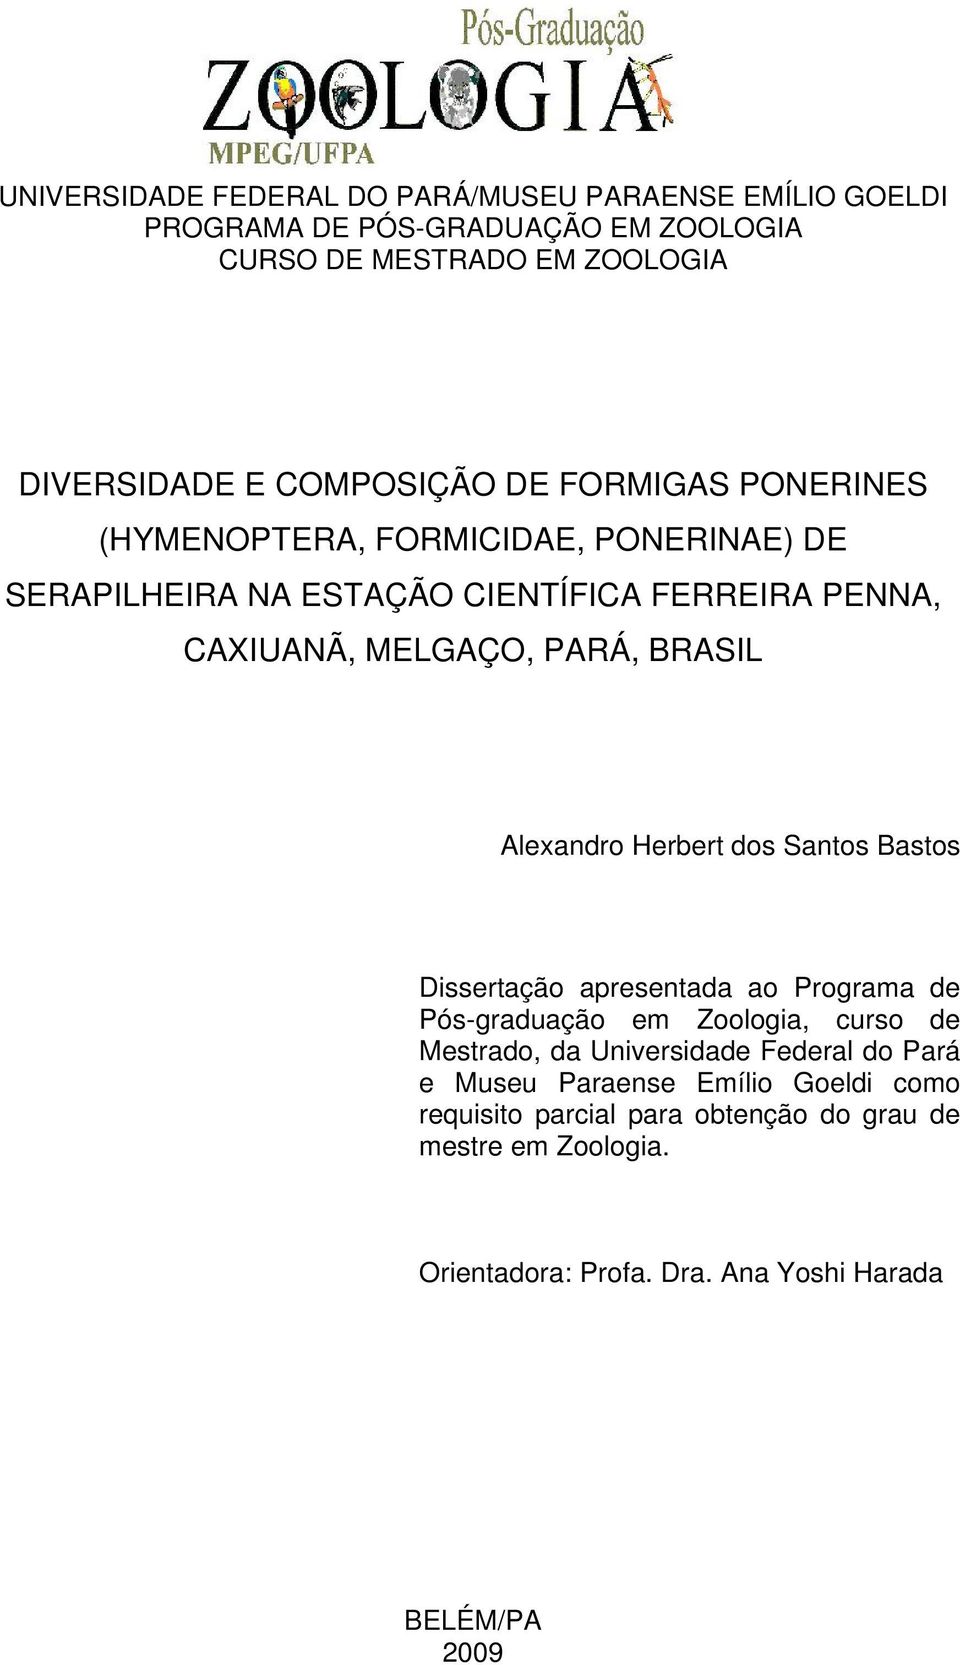 Alexandro Herbert dos Santos Bastos Dissertação apresentada ao Programa de Pós-graduação em Zoologia, curso de Mestrado, da Universidade Federal do